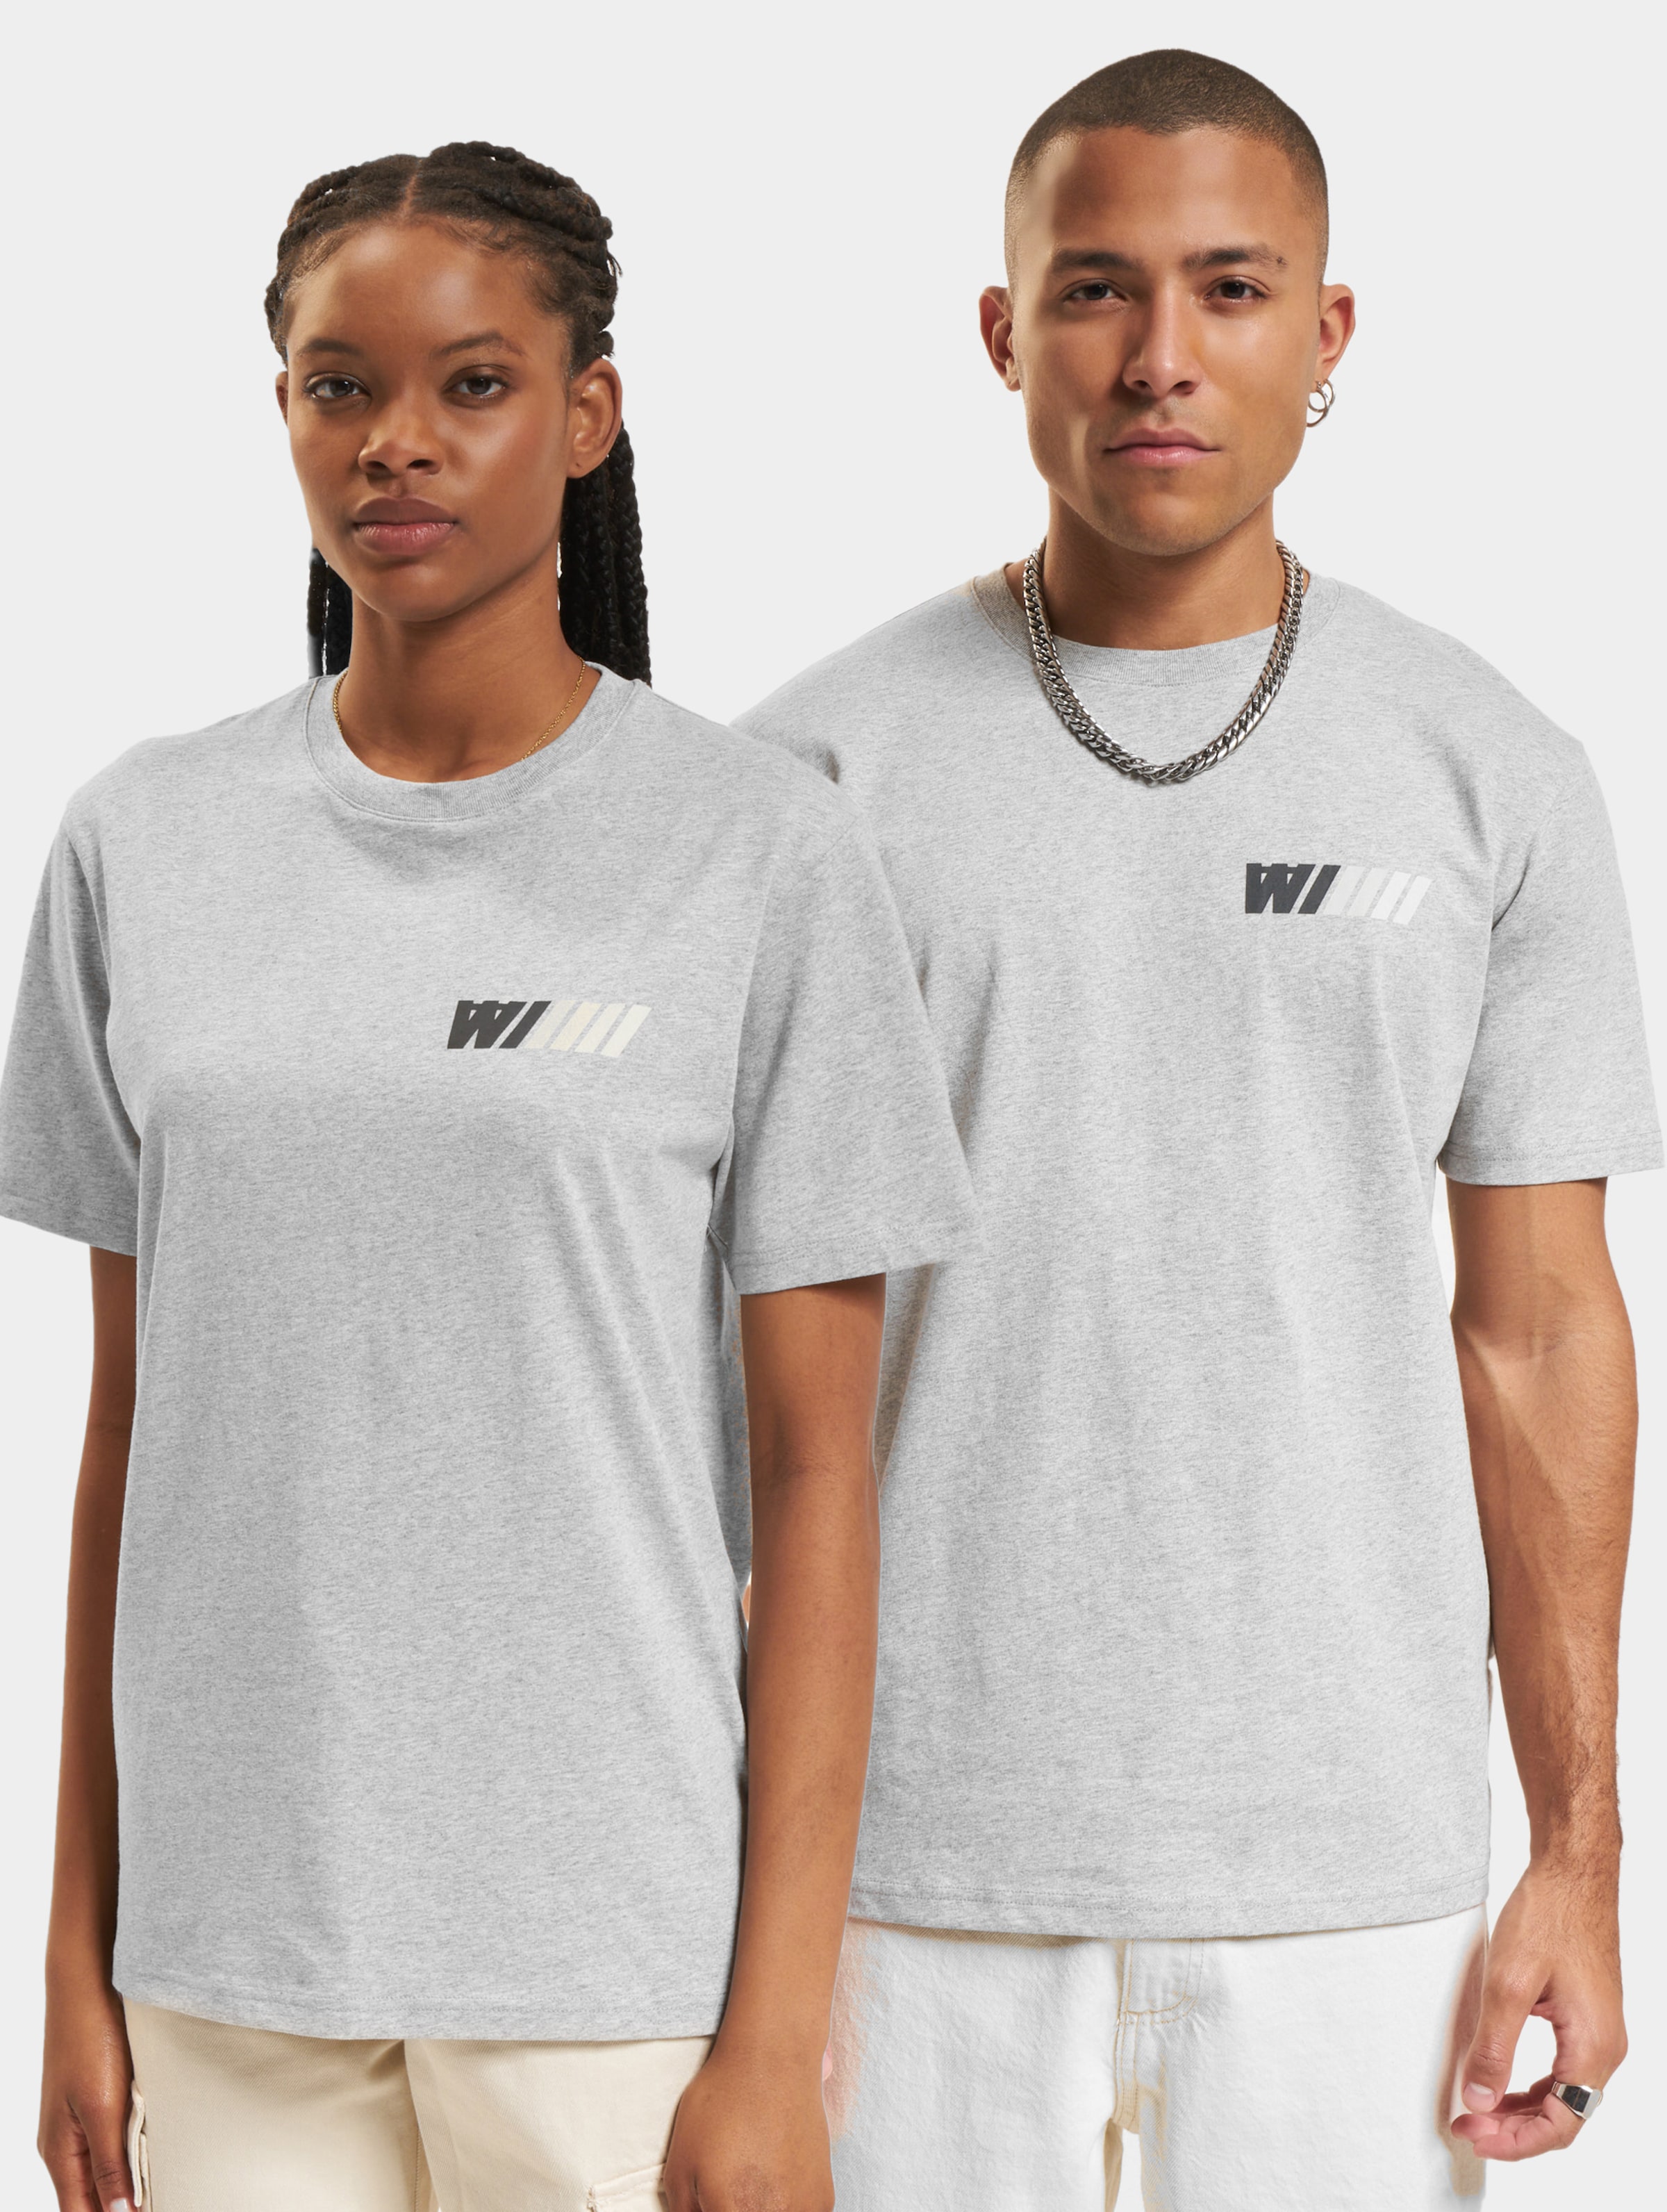 Wood Ace Dealership T-Shirt Frauen,Männer,Unisex op kleur grijs, Maat XL